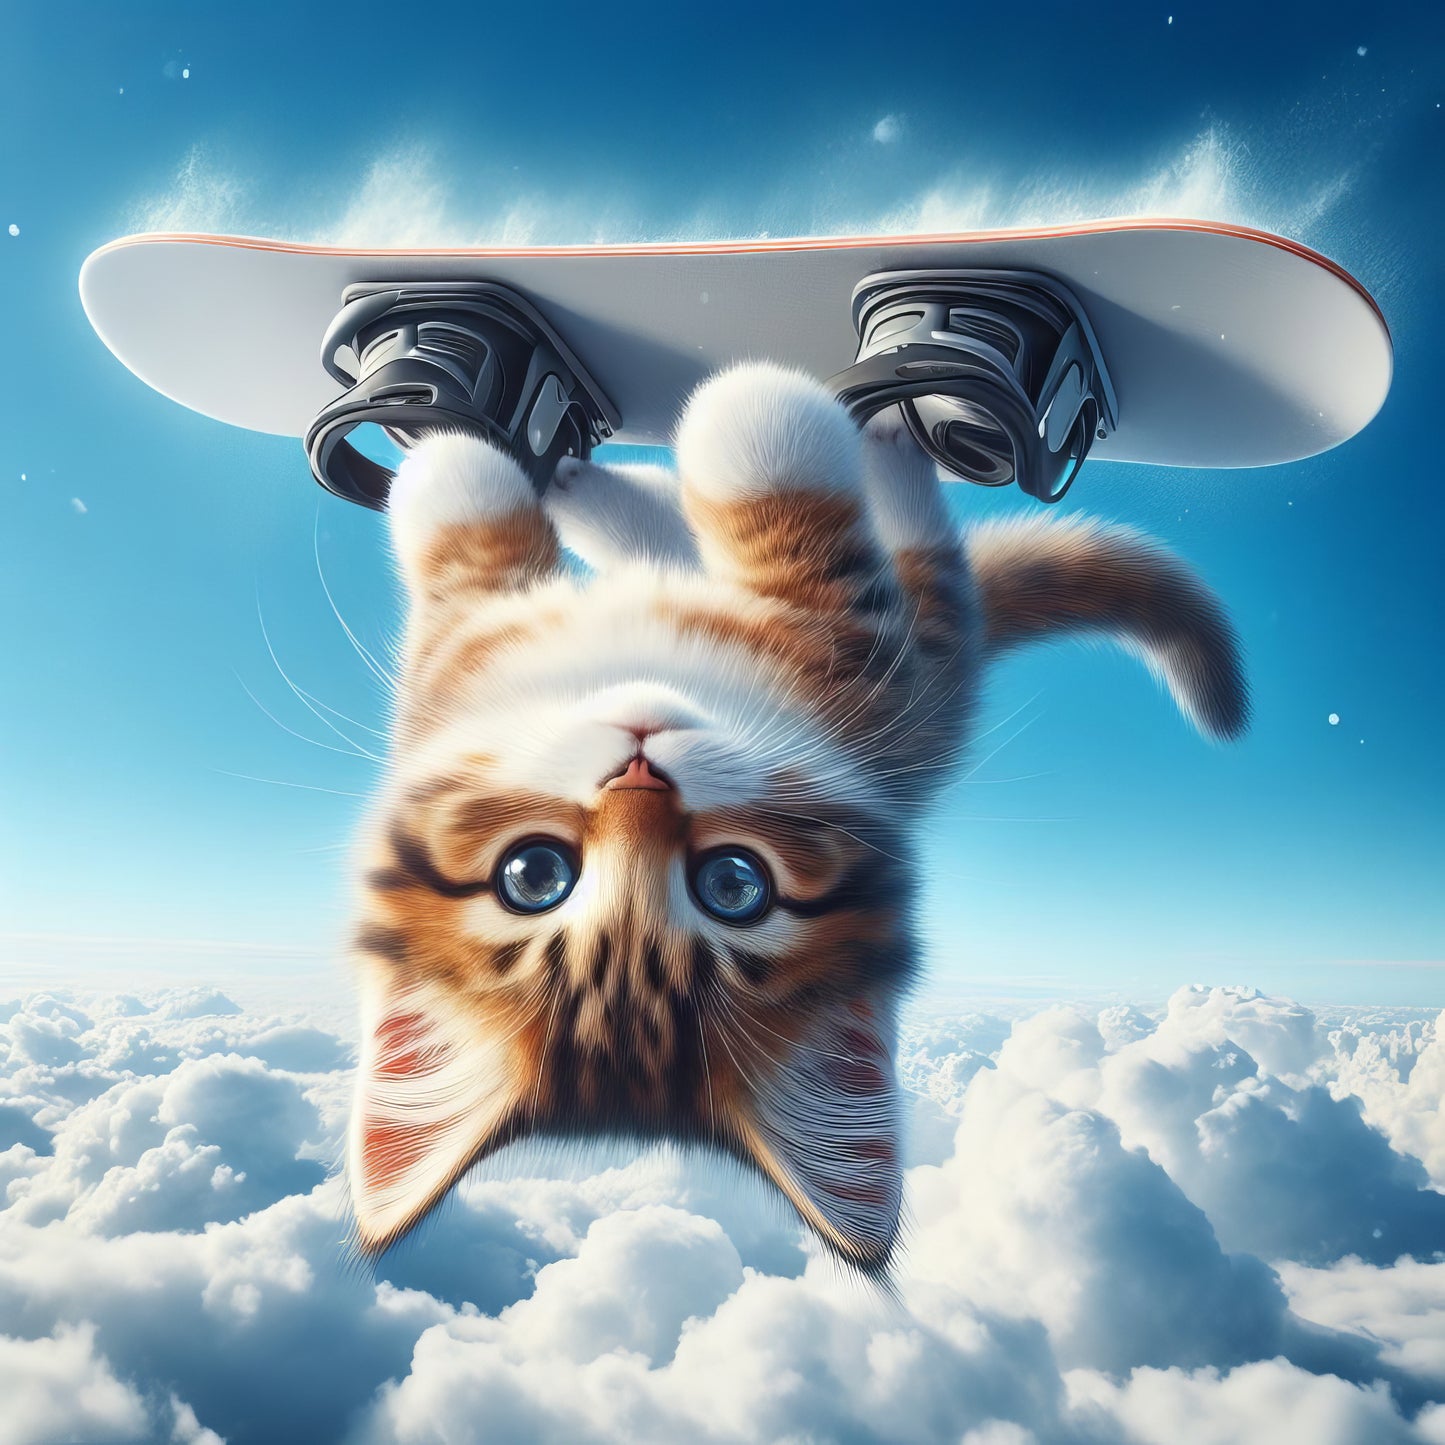 Kitten's Gravity-Defying Snowboard Stunt - Art Print